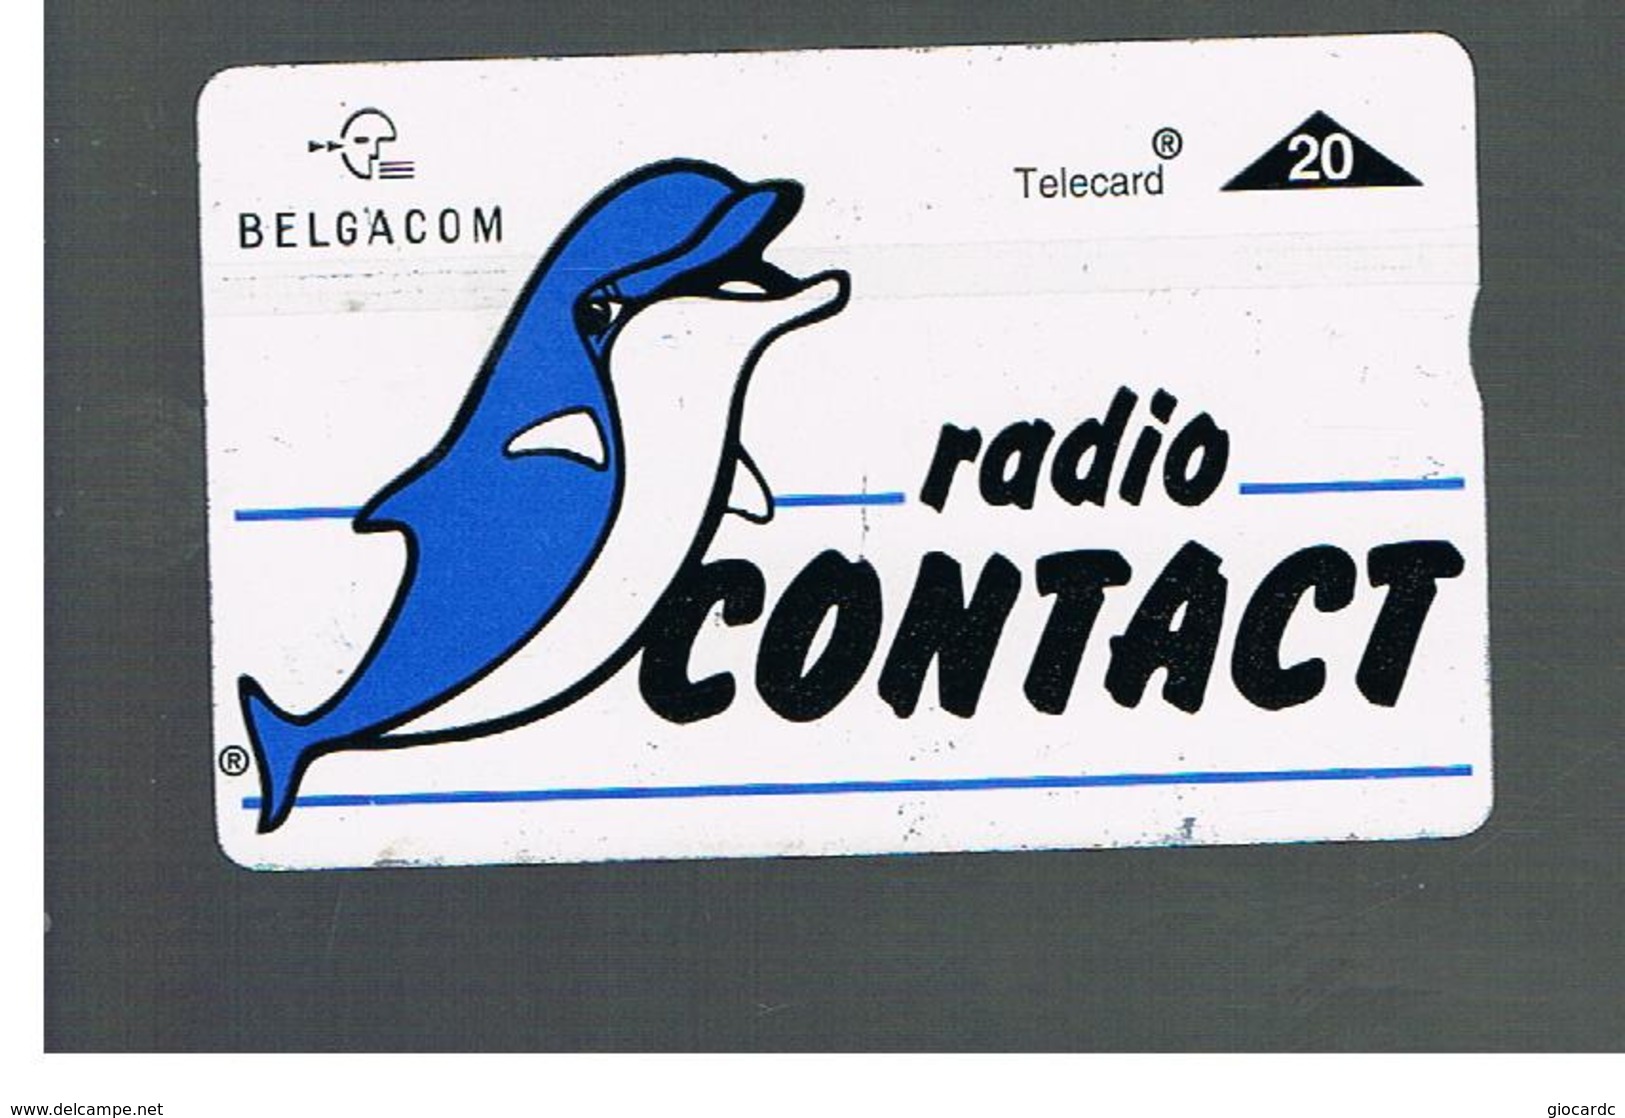 BELGIO (BELGIUM) -  1996  RADIO CONTACT, DELPHIN                - USED - RIF. 10835 - Delphine